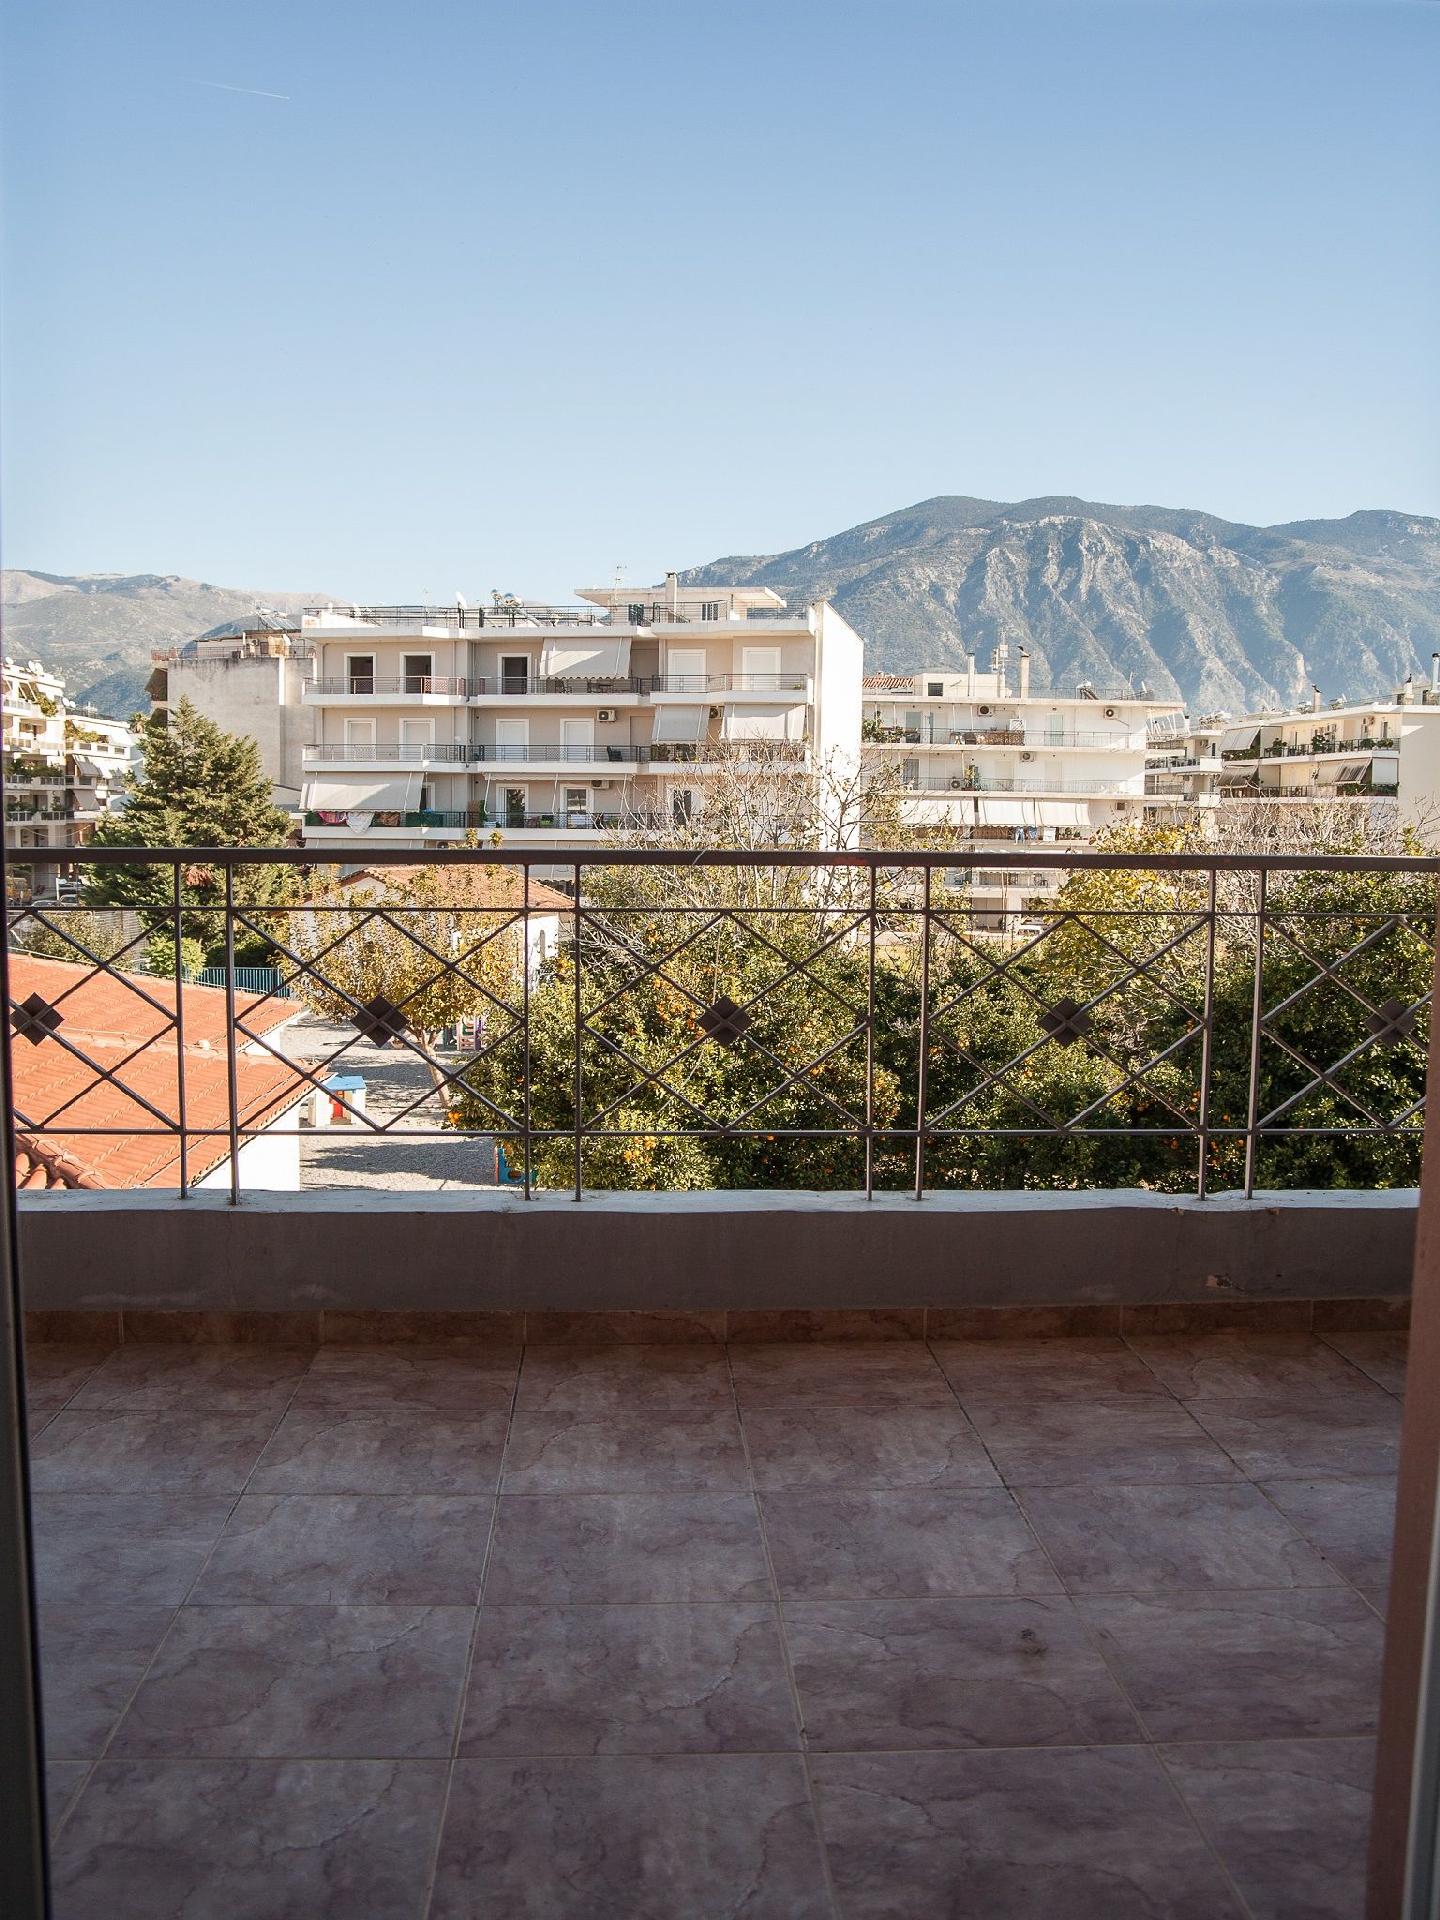 Ferienwohnung für 4 Personen ca. 80 m² i Ferienwohnung in Griechenland